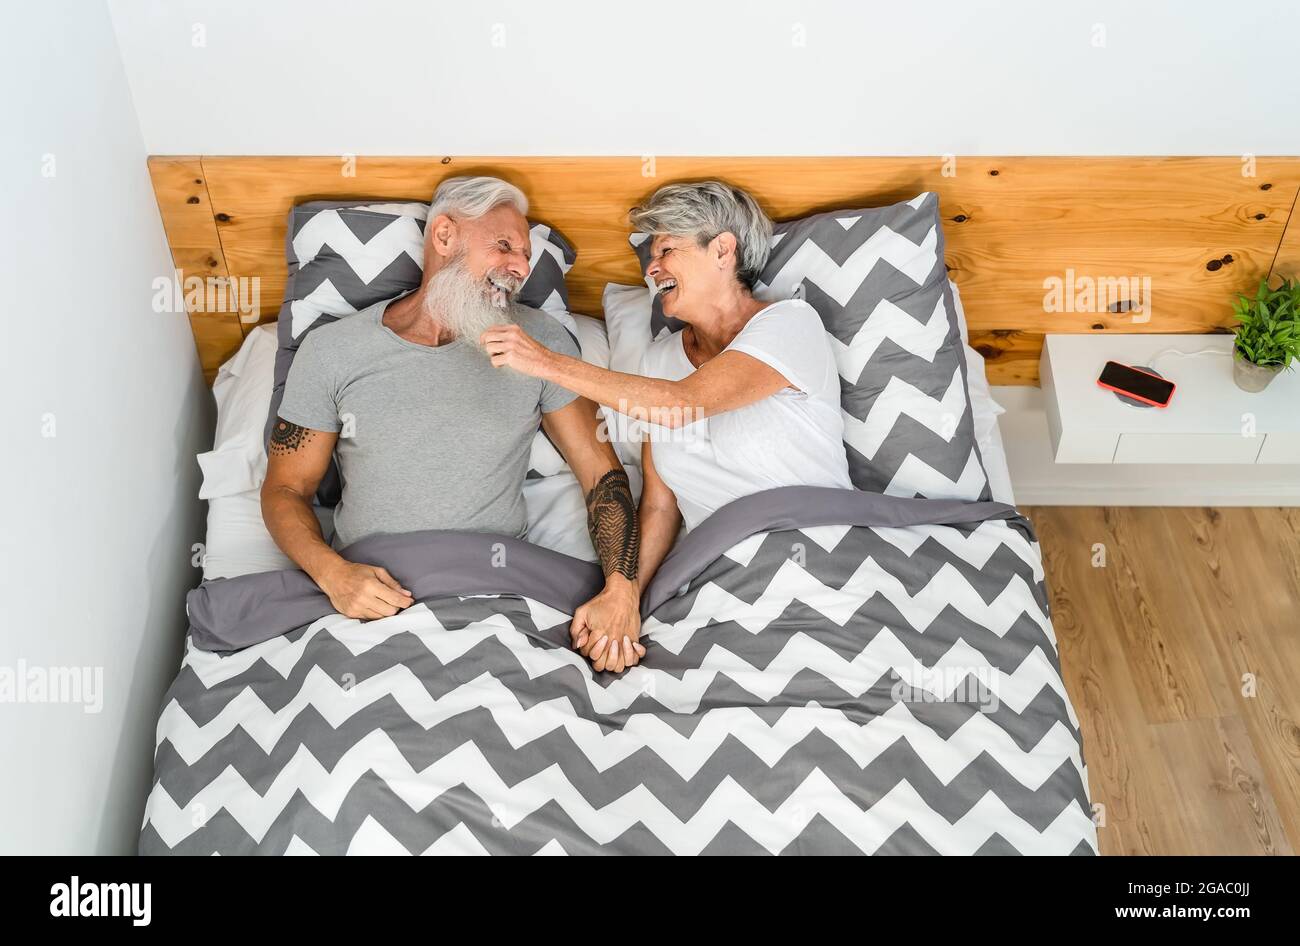 Glückliches Senioren-Paar, das zusammen lacht, während es im Bett unter Decken liegt - älterer Lebensstil und Liebesbeziehung Konzept Stockfoto